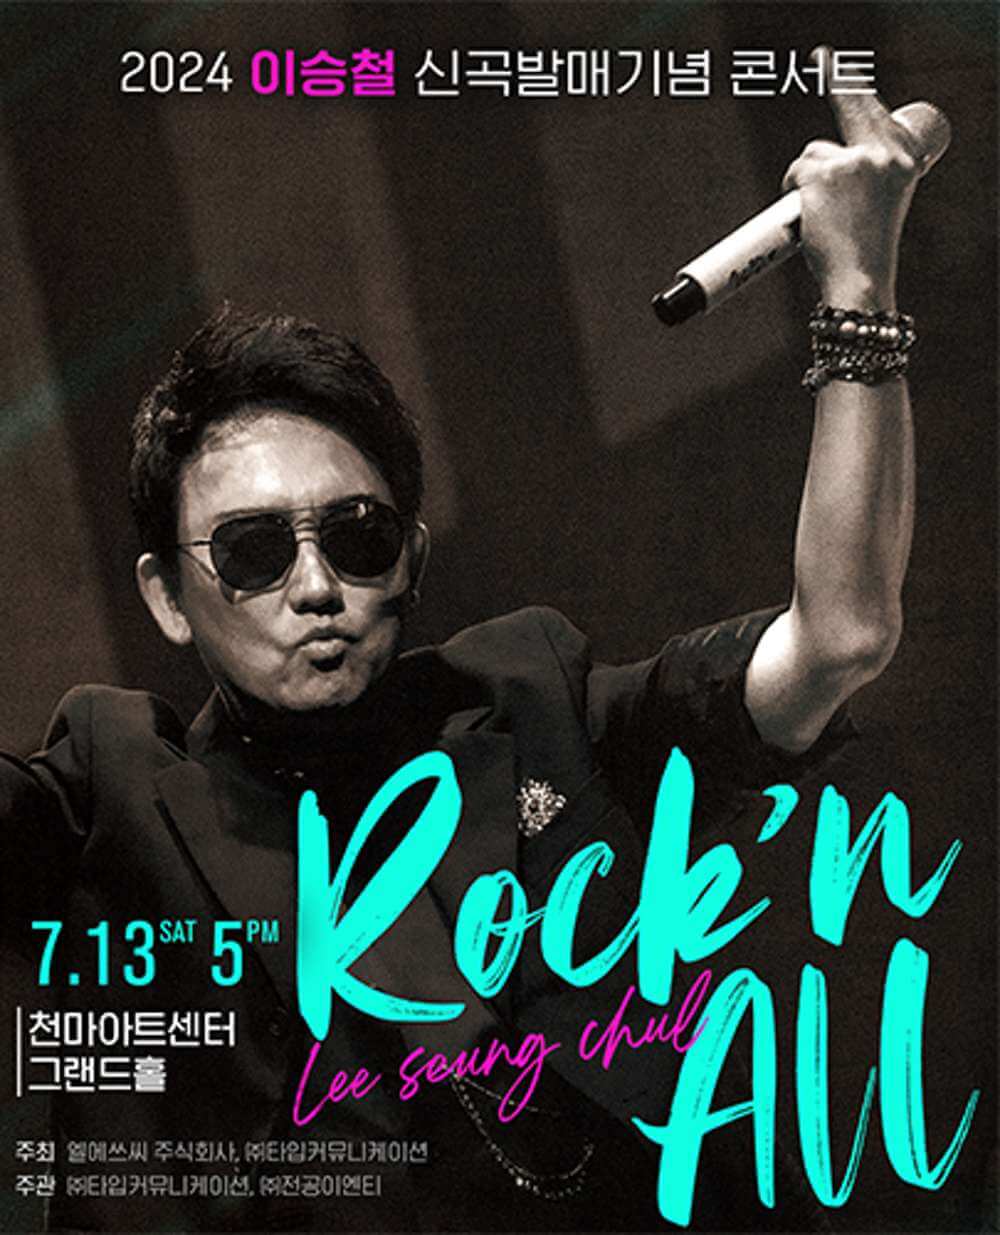 2024 이승철 신곡발매기념 콘서트 “Rock'n All” - 대구